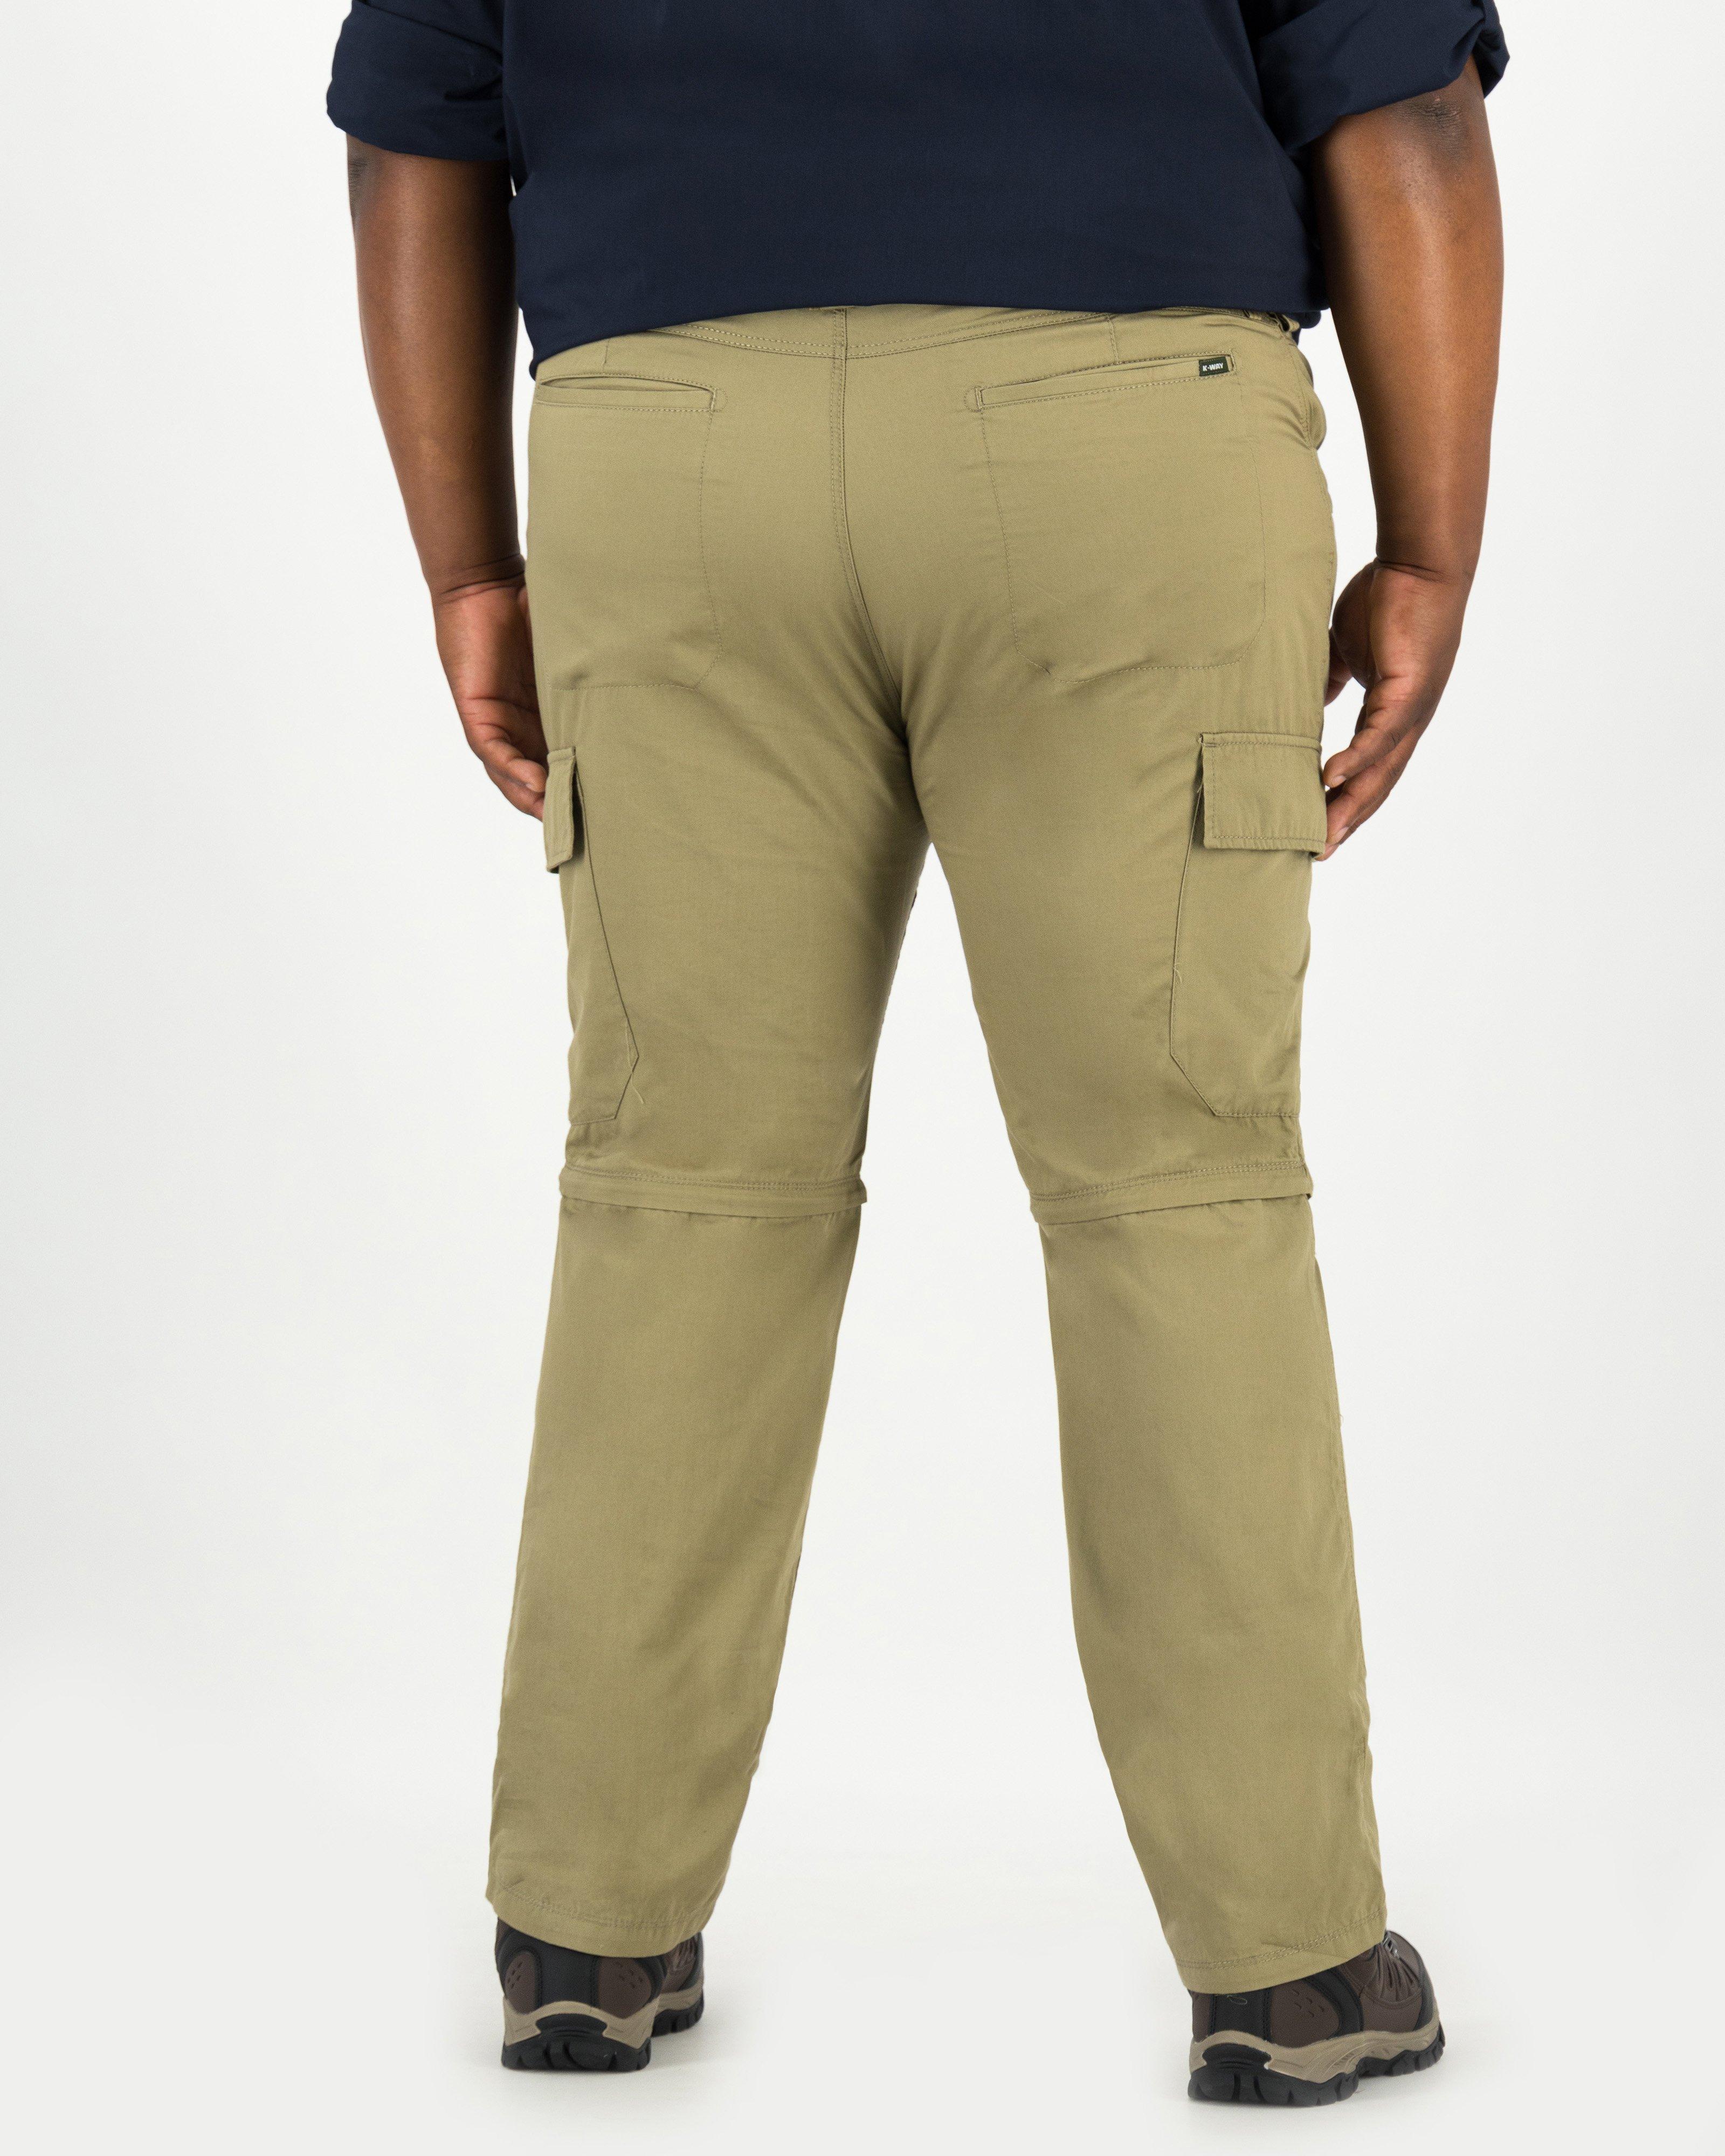 K-Way Elements Men's Safari Zip-off Pants Extended Sizes | Cape Union Mart